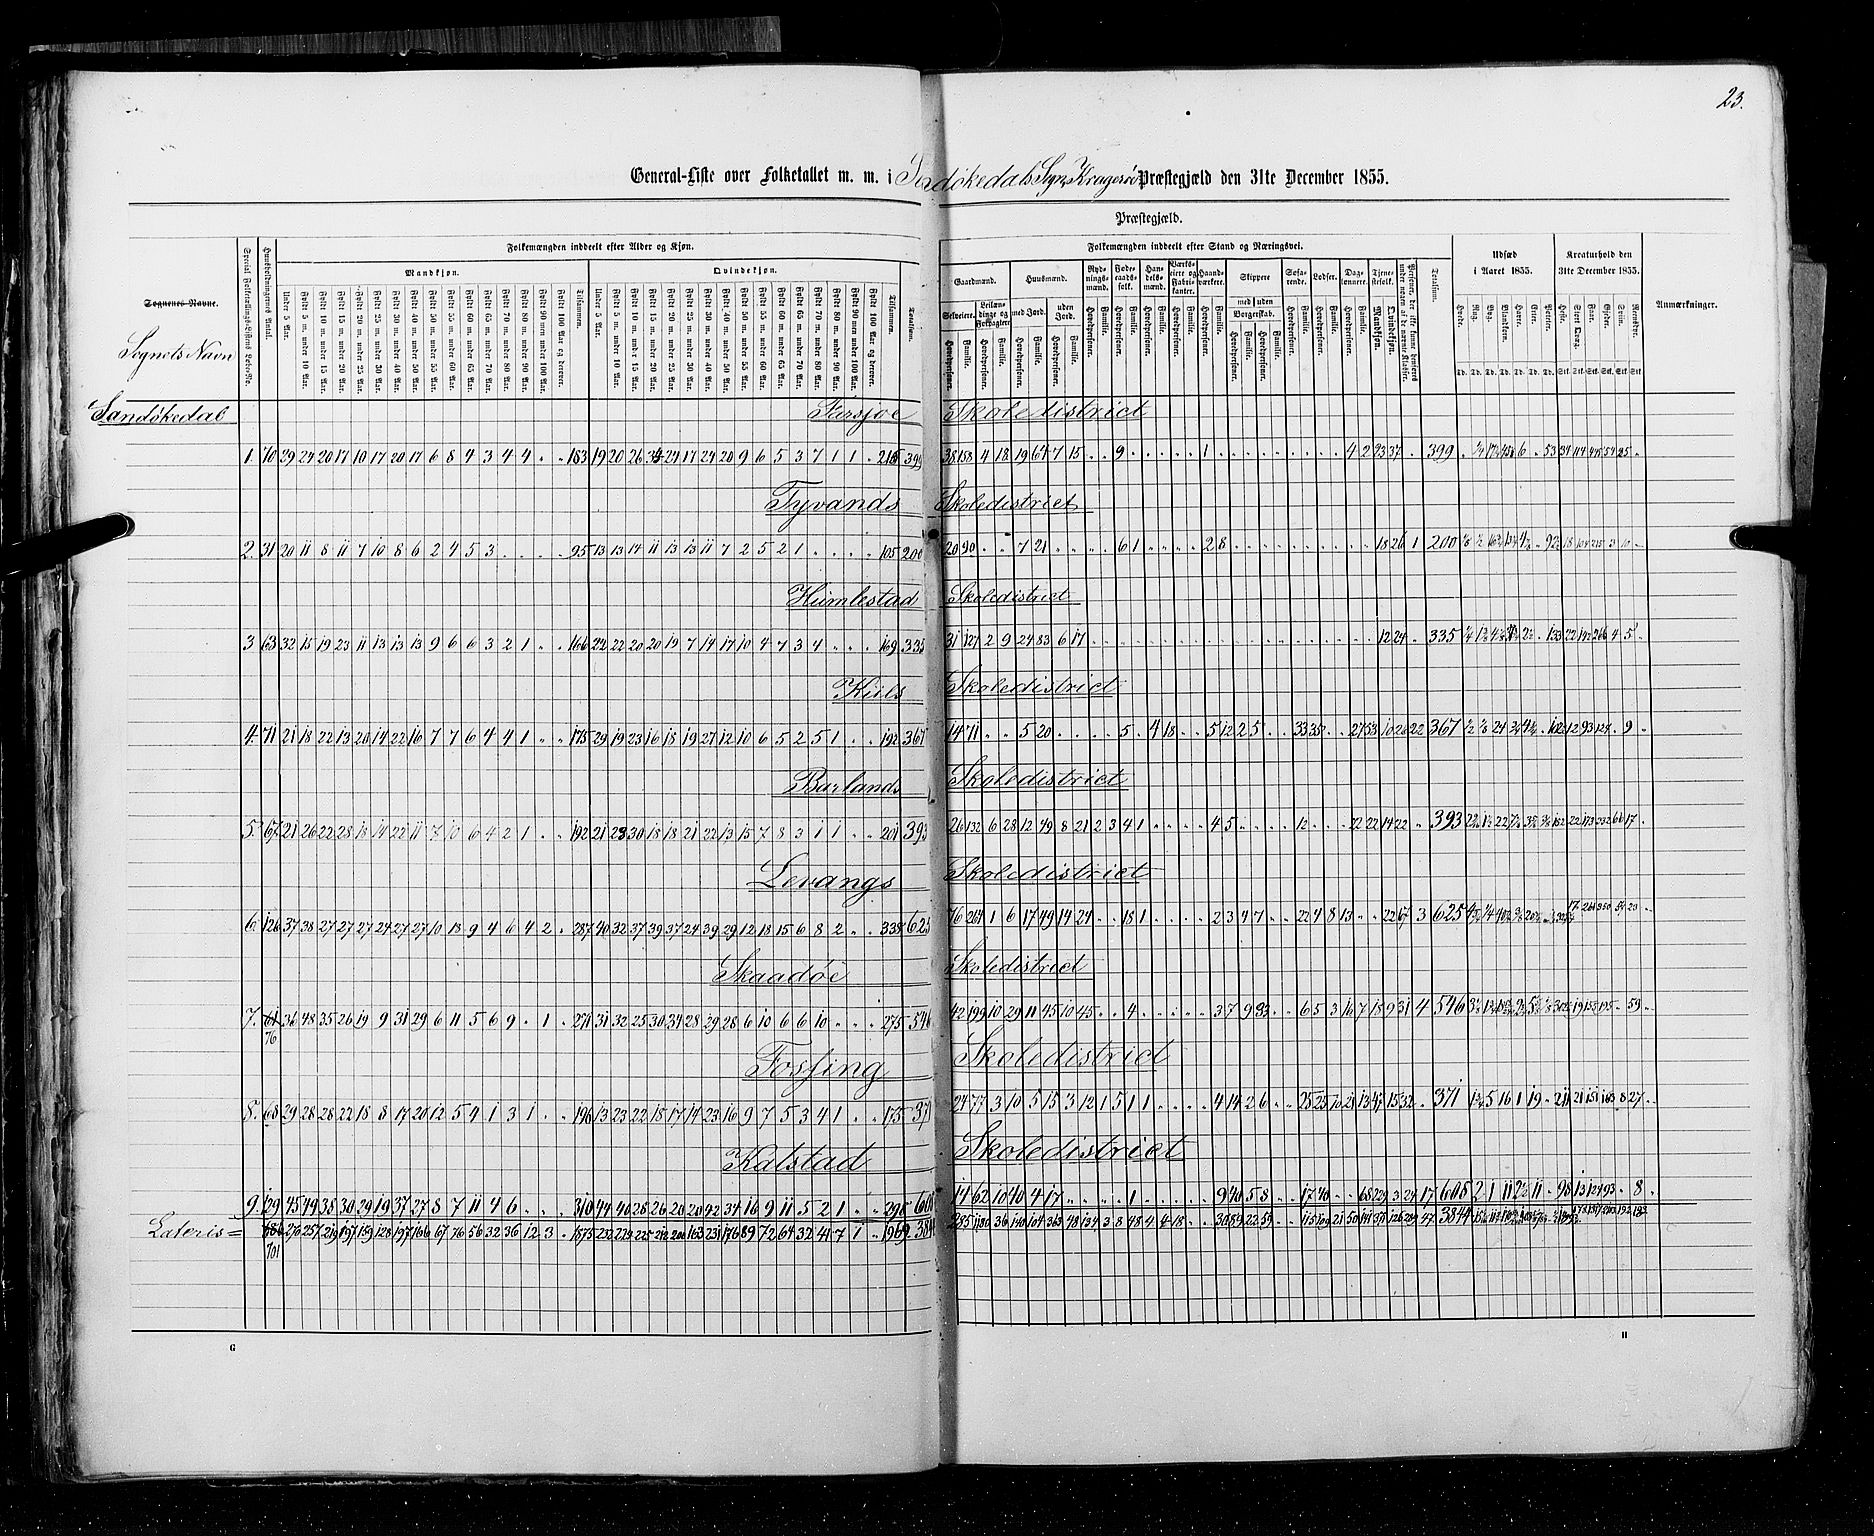 RA, Census 1855, vol. 3: Bratsberg amt, Nedenes amt og Lister og Mandal amt, 1855, p. 23